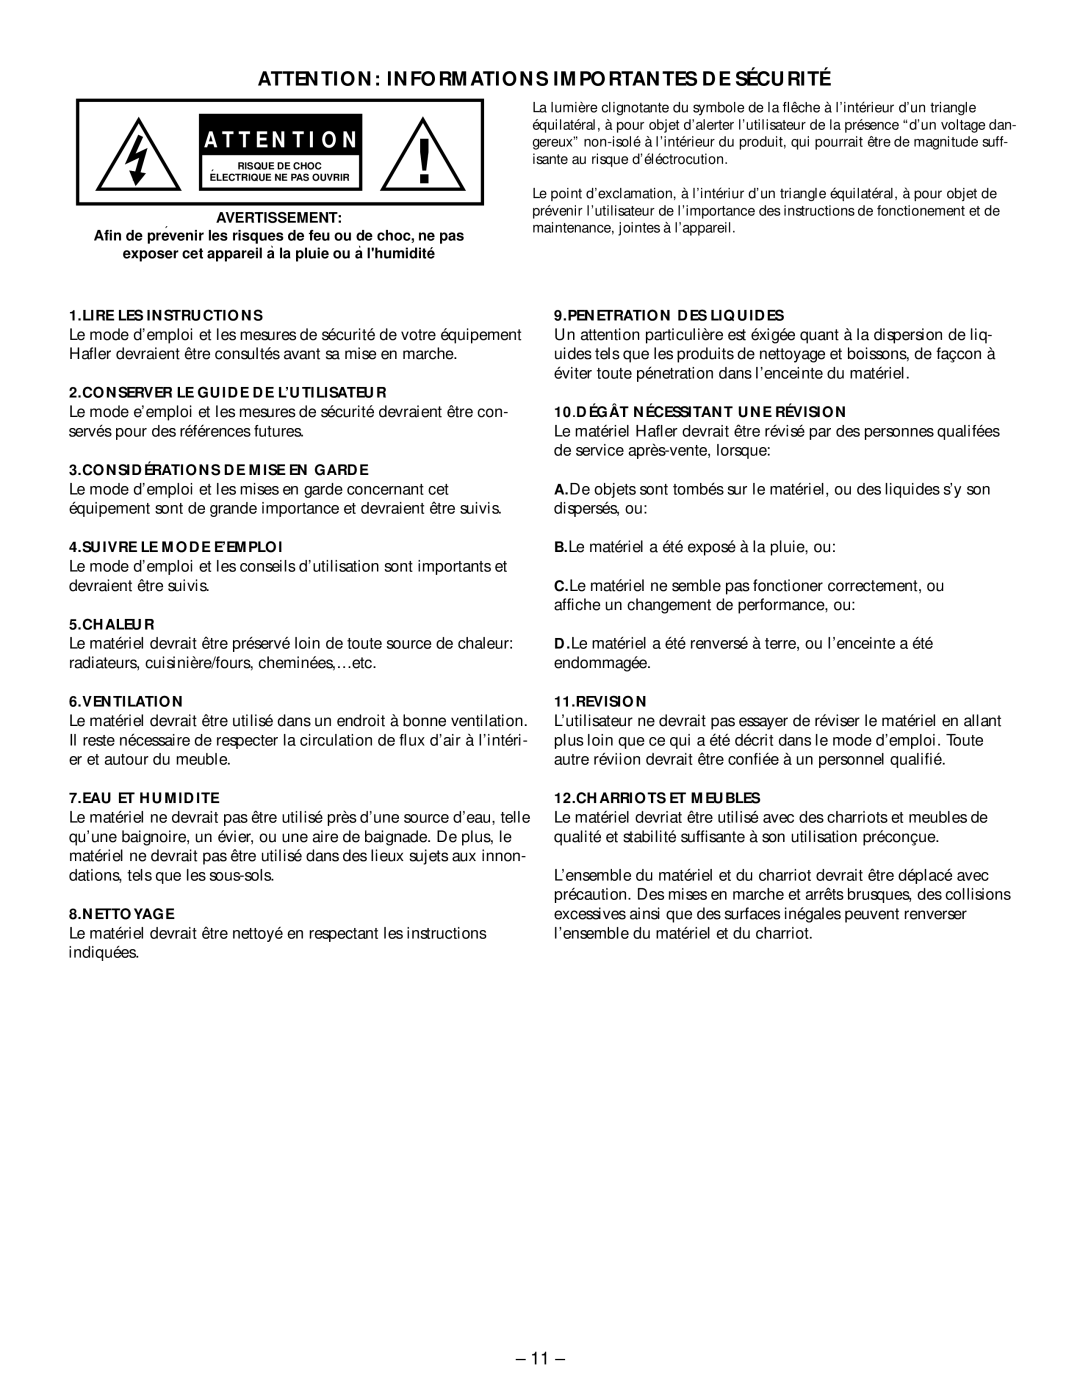 Hafler M5 manual Attention Informations Importantes De Sécurité, A T T E N T I O N 